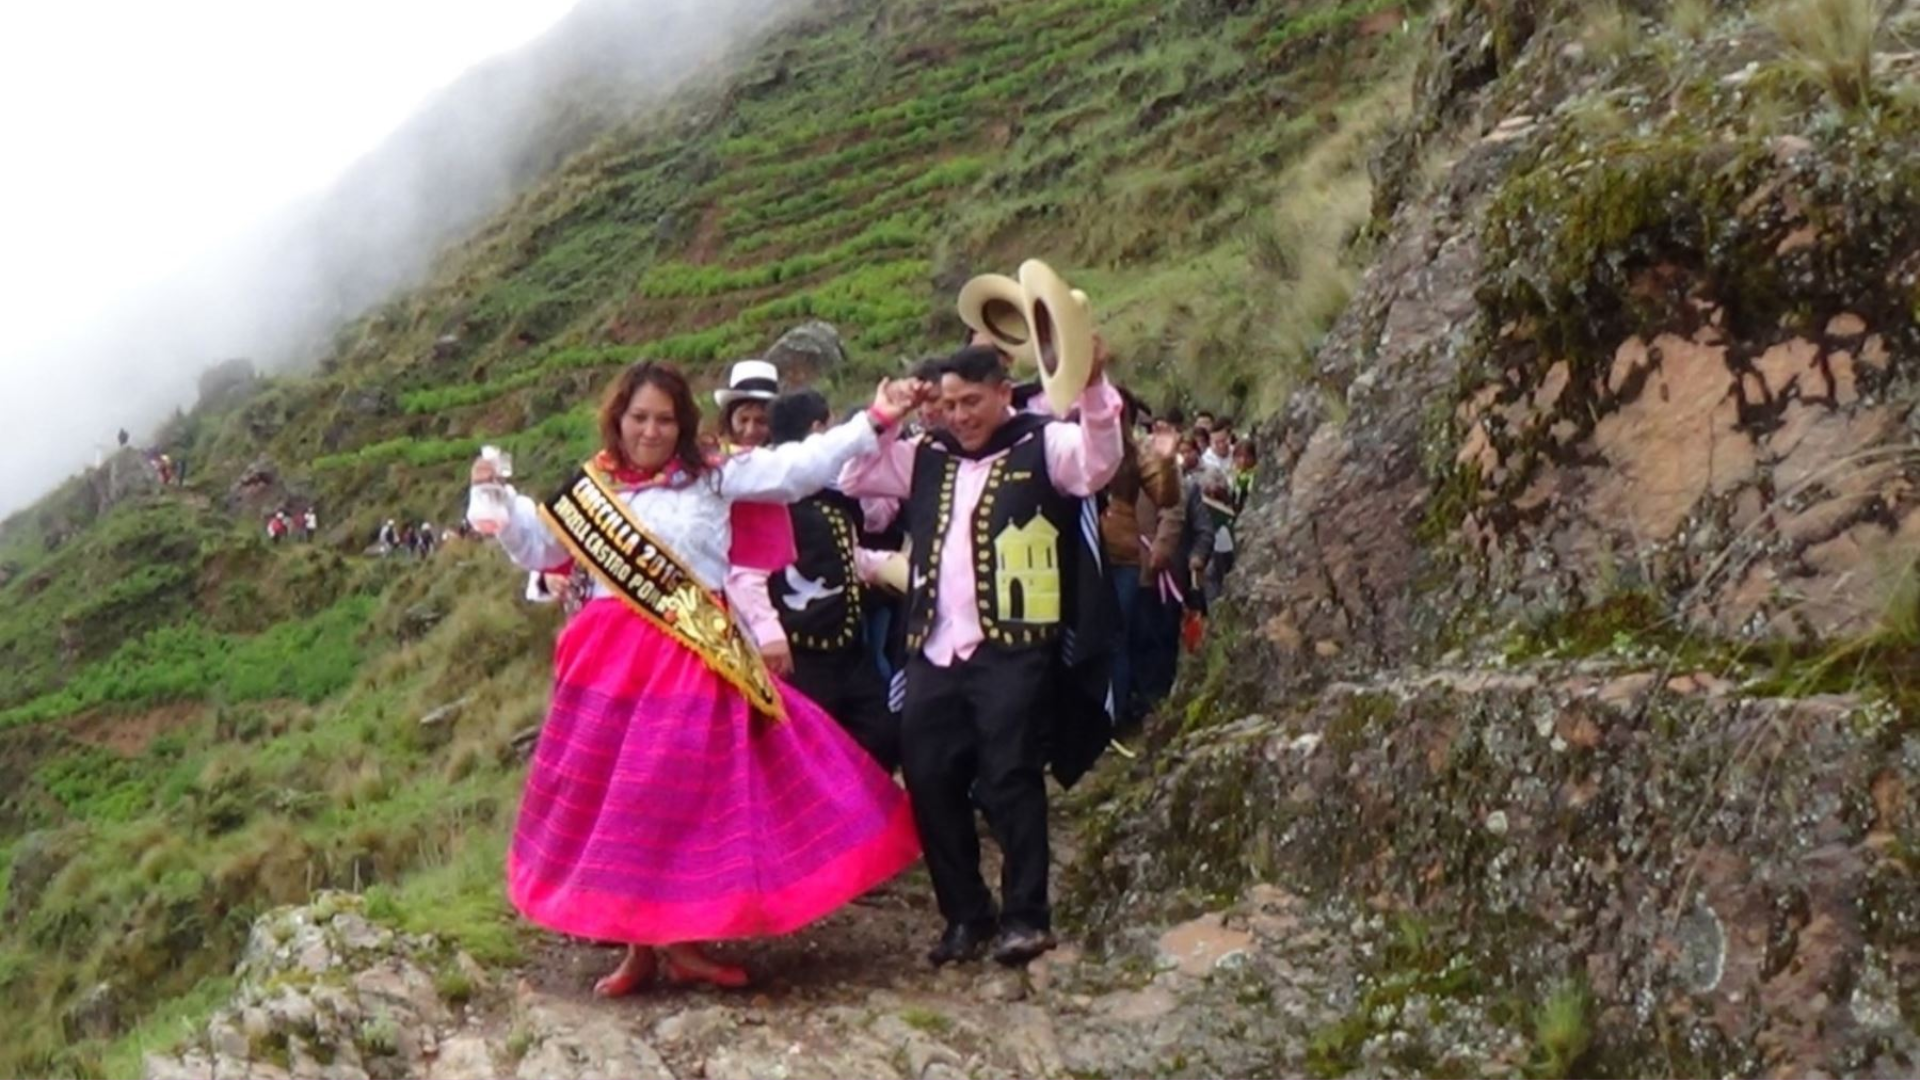 La Festividad en honor al Tayta Compadres es popularmente conocida como la "Fiesta de solteros y solteras" en Pasco.